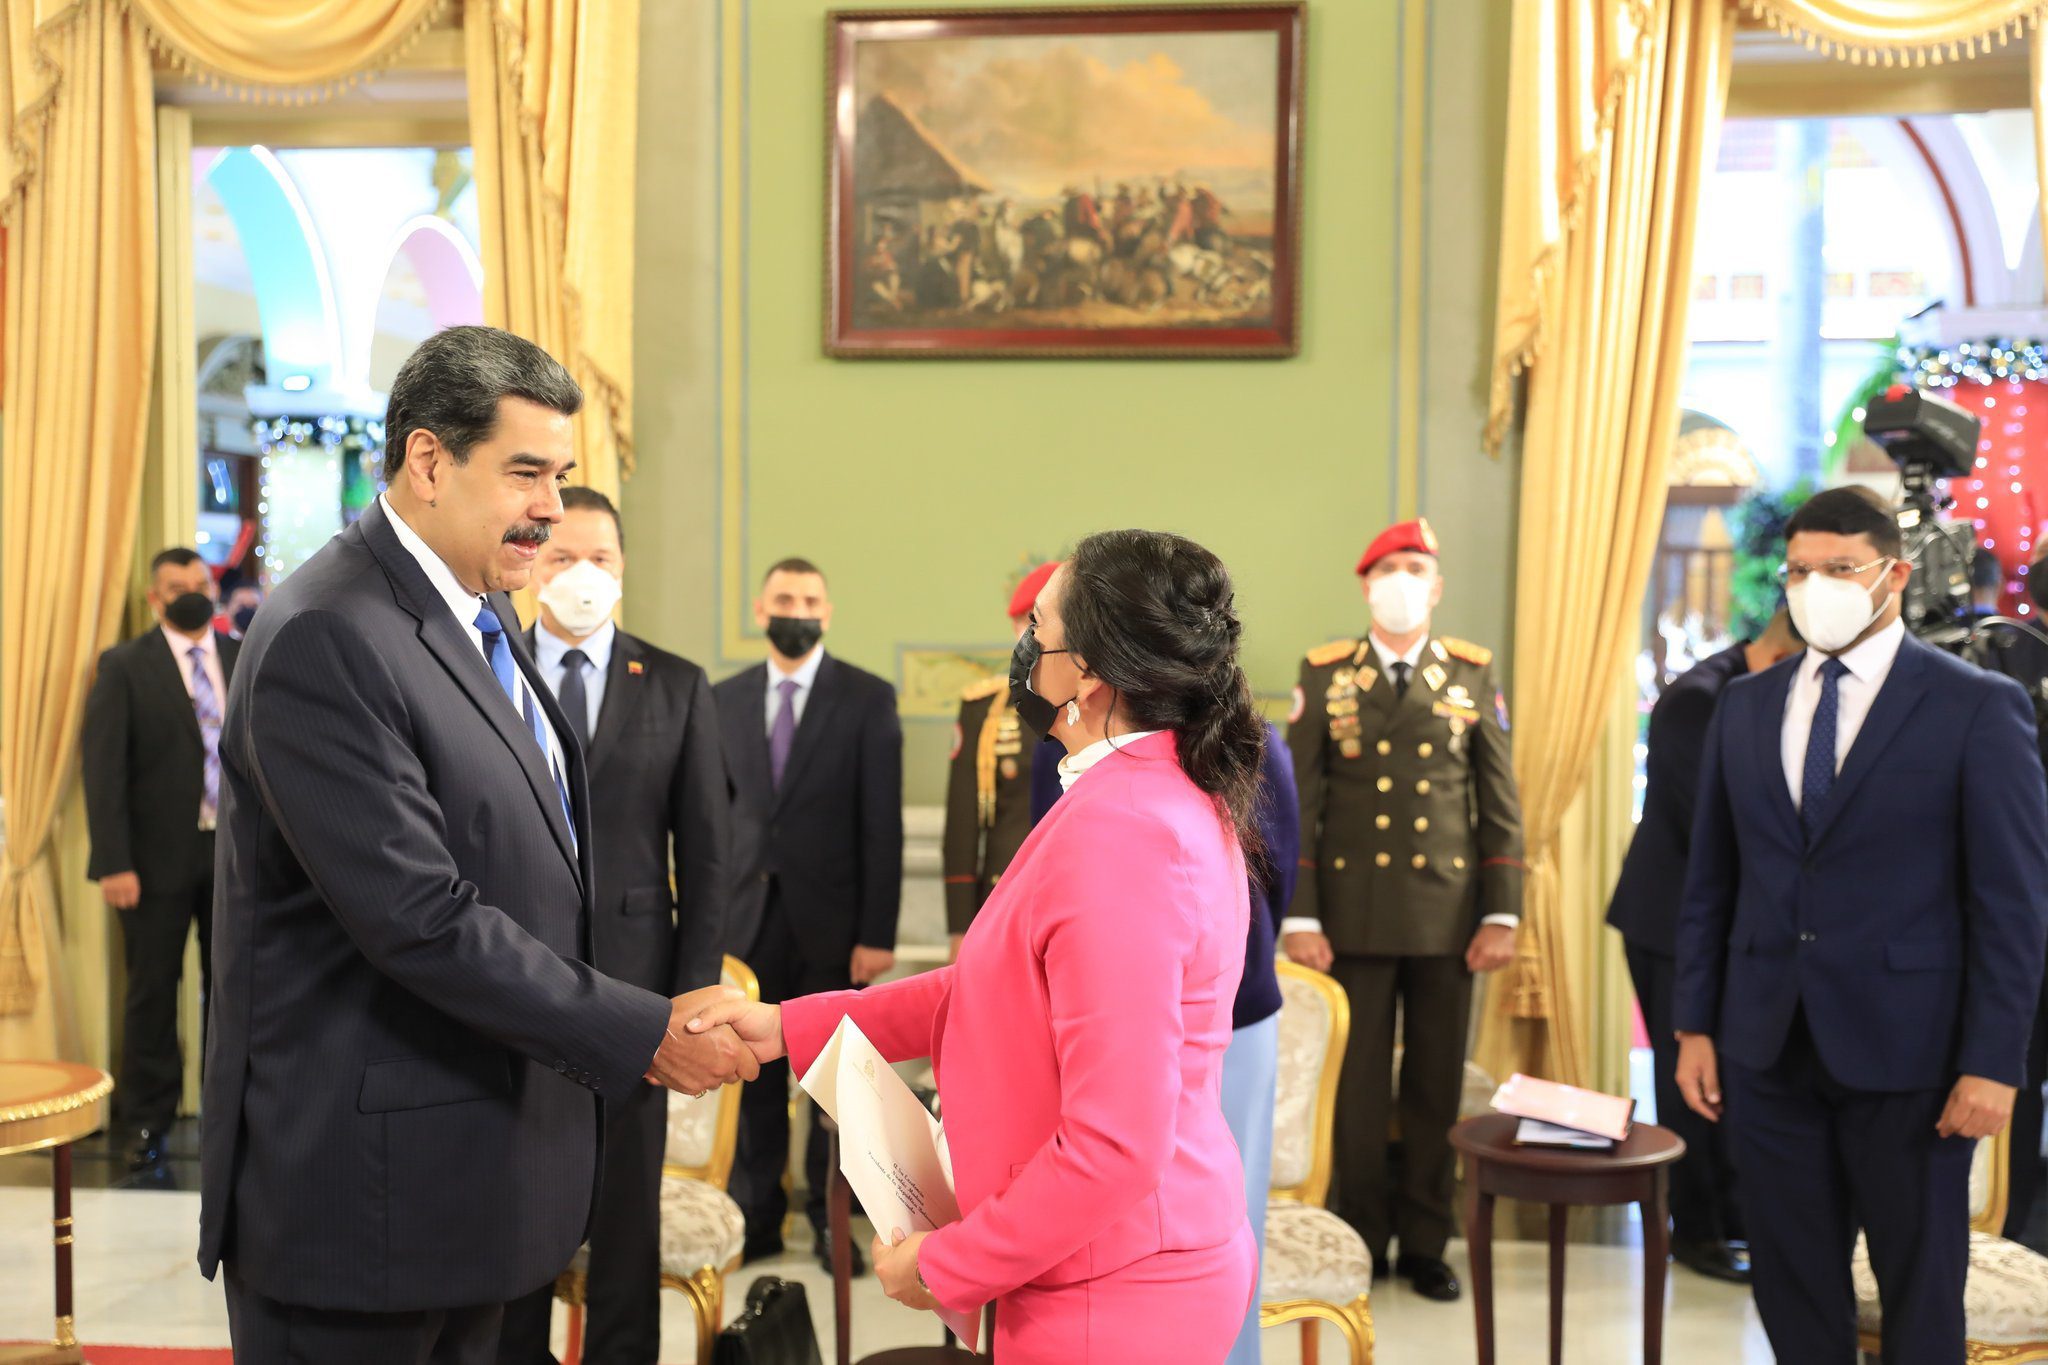 presidente maduro recibe cartas credenciales de embajadora de honduras laverdaddemonagas.com anyconv.com fgbuwojwyaiin2c